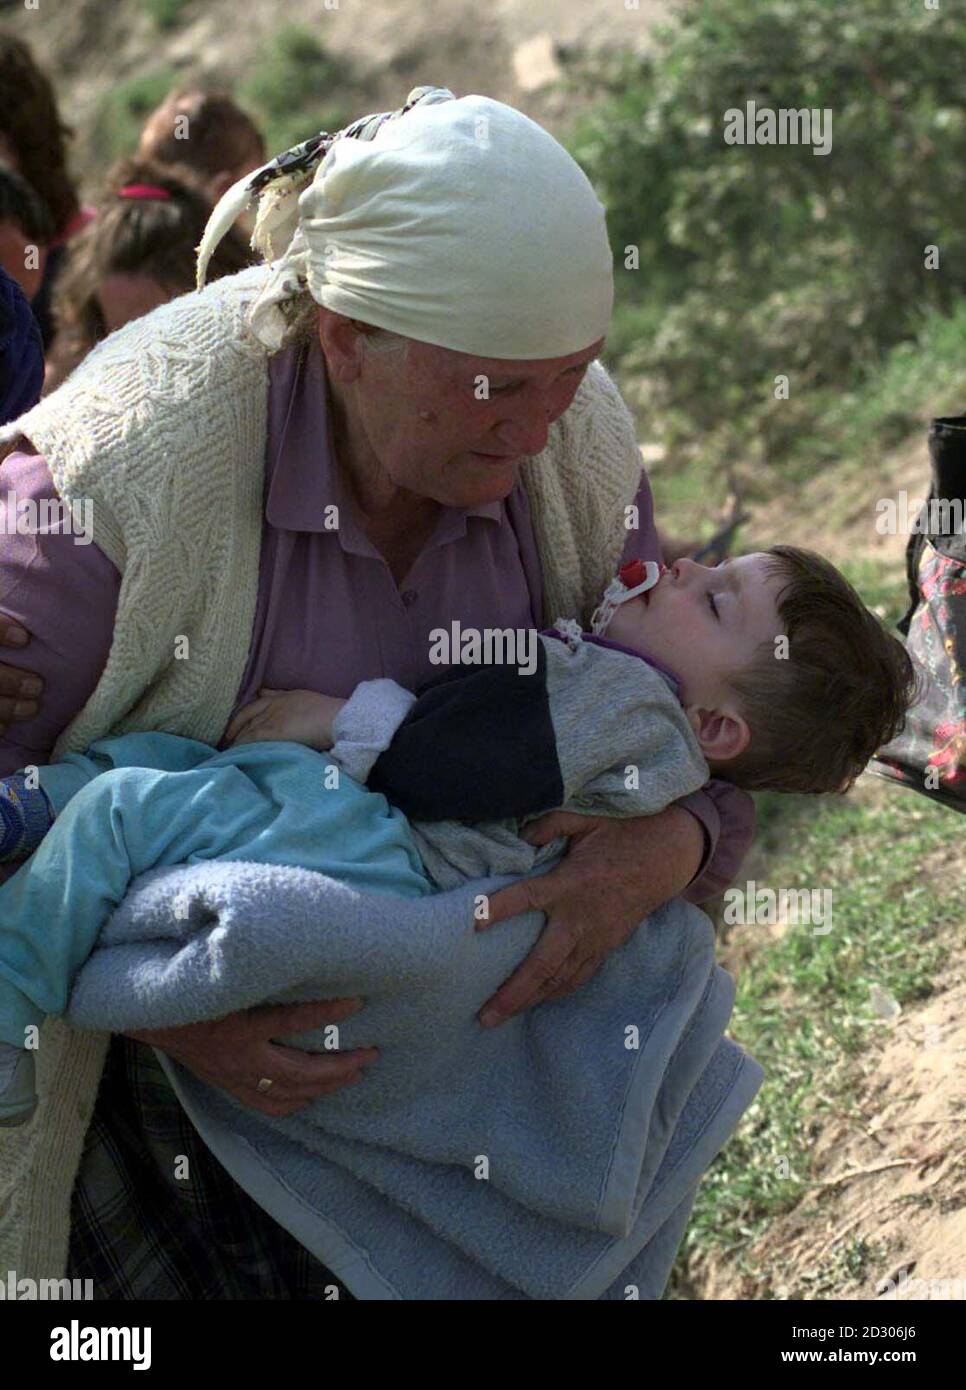 Une vieille femme avec un enfant se prépare à quitter le passage frontalier de Blace alors que le Premier ministre britannique Tony Blair est arrivé, où il a rencontré des réfugiés du Kosovo bloqués dans des terres sans homme, en attendant l'autorisation d'entrée en Macédoine. Banque D'Images